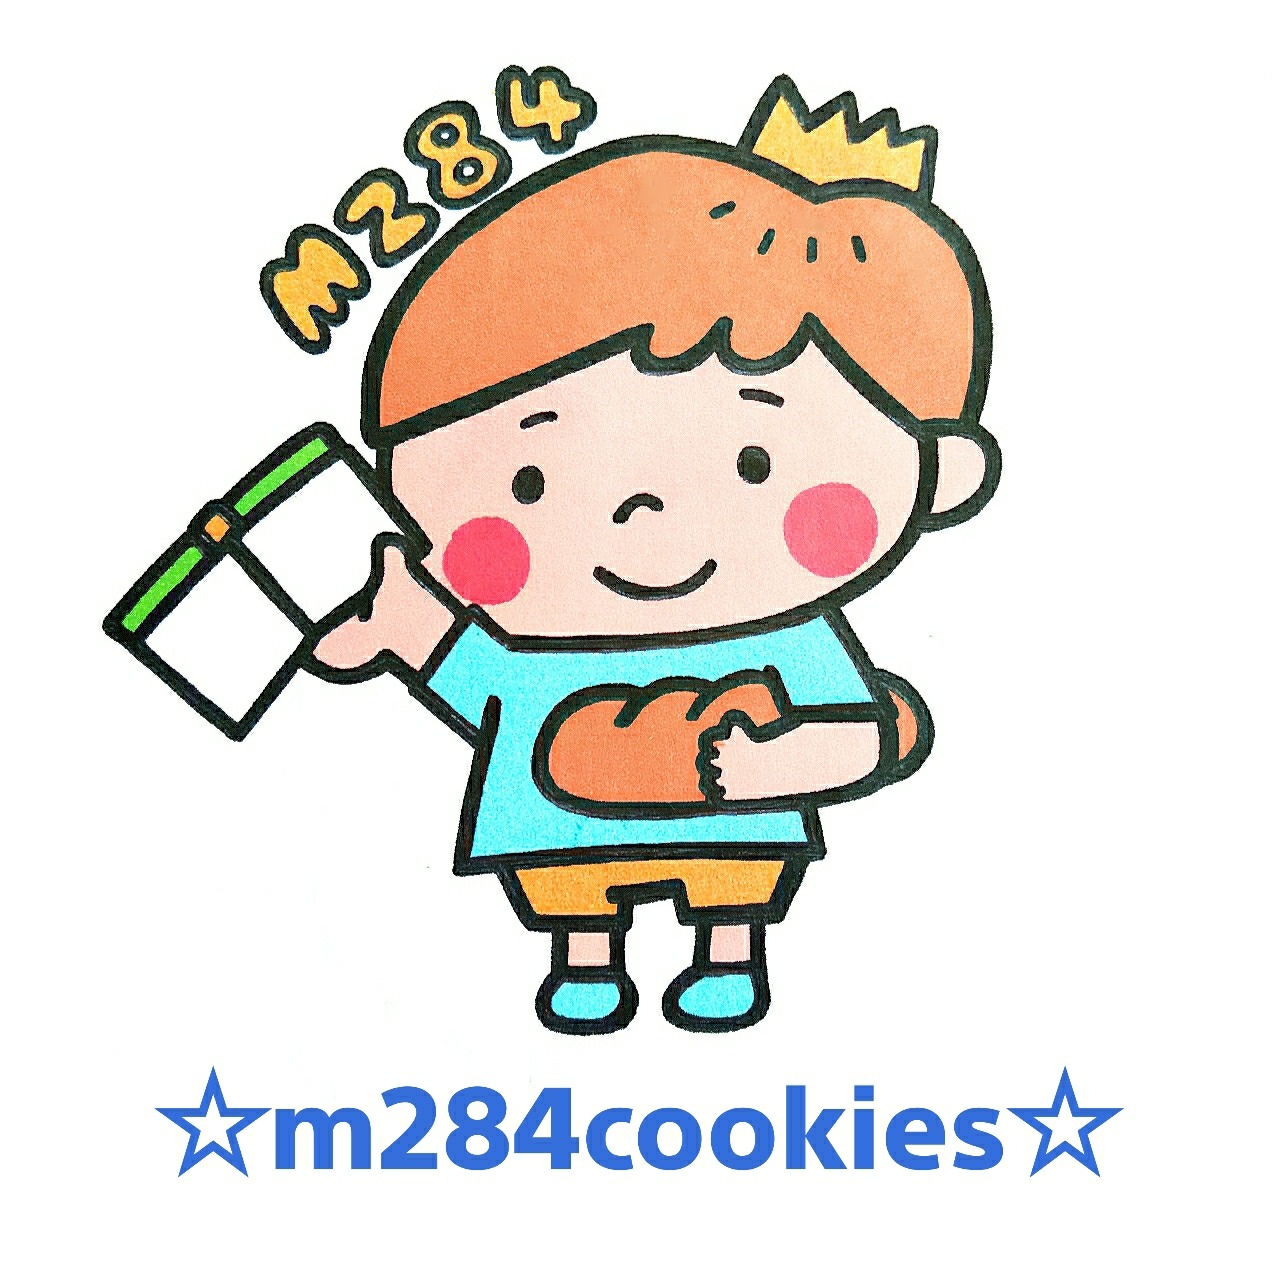 m284cookies